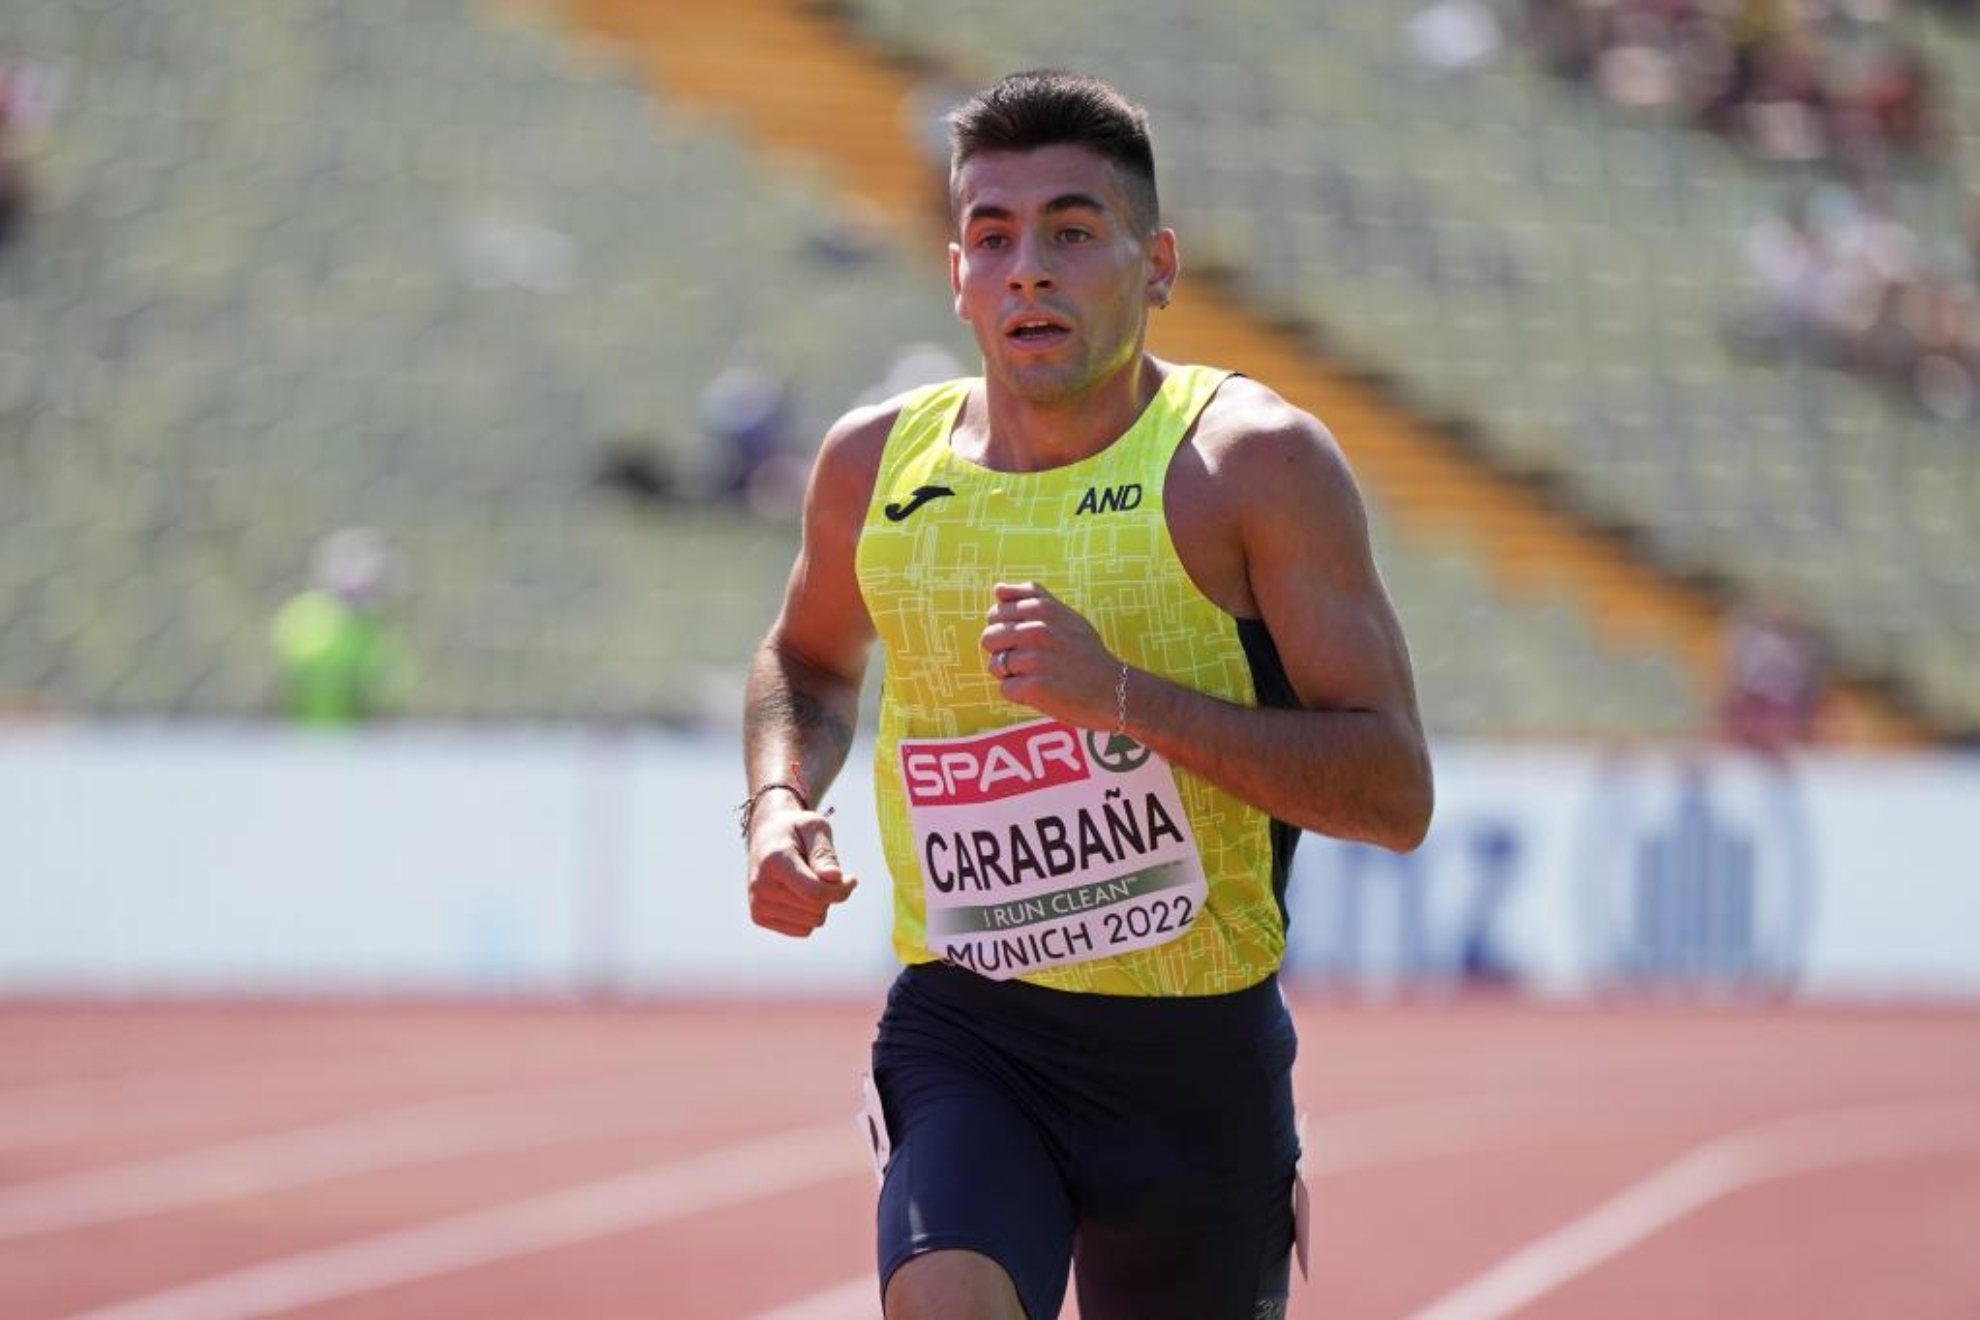 El gesto deportivo de Carabaña: se para en carrera para ayudar a un atleta y queda último